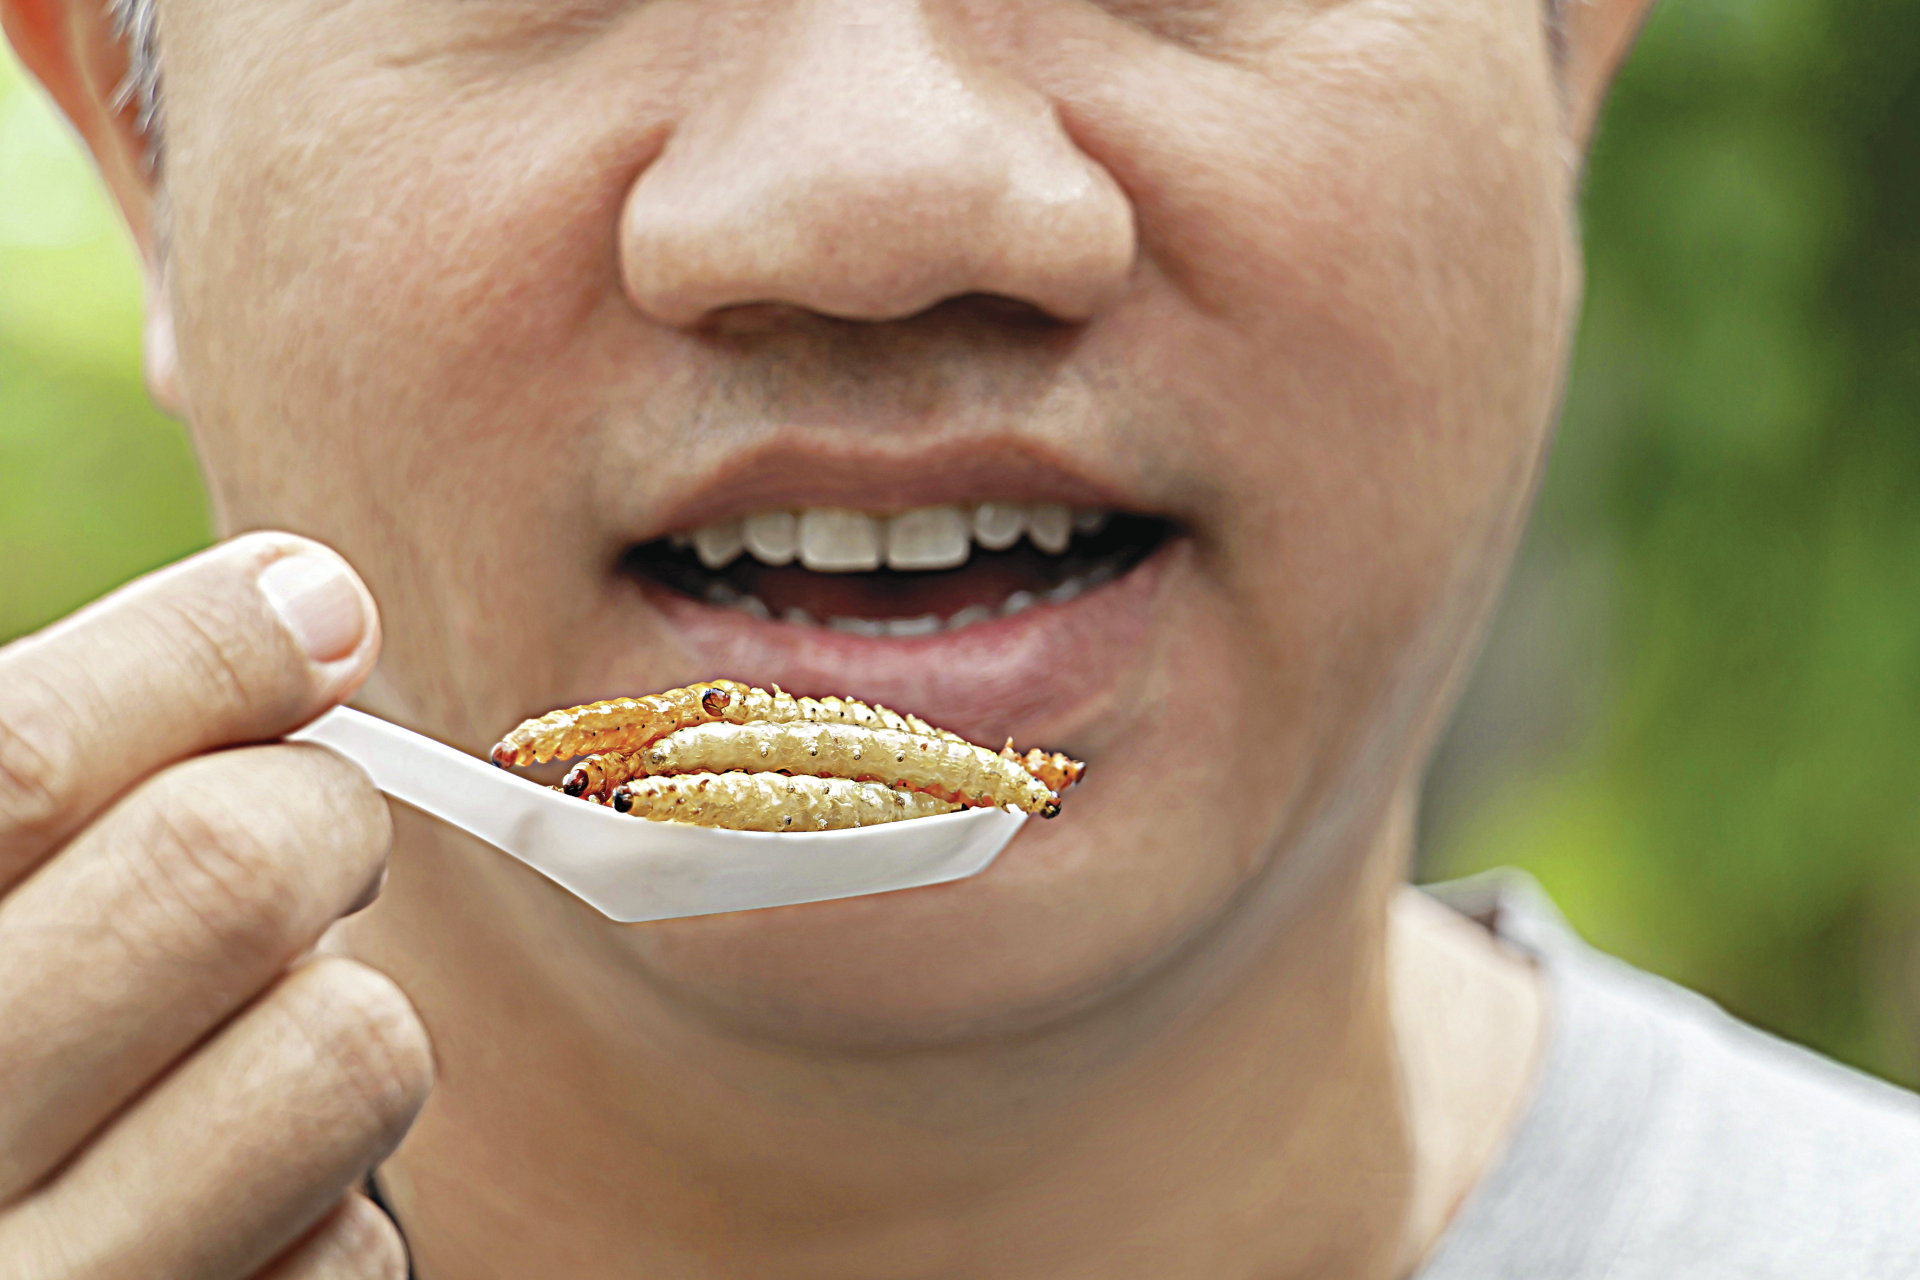 “Adoro snacks de insetos”. Portugueses divididos entre o entusiasmo e a repulsa